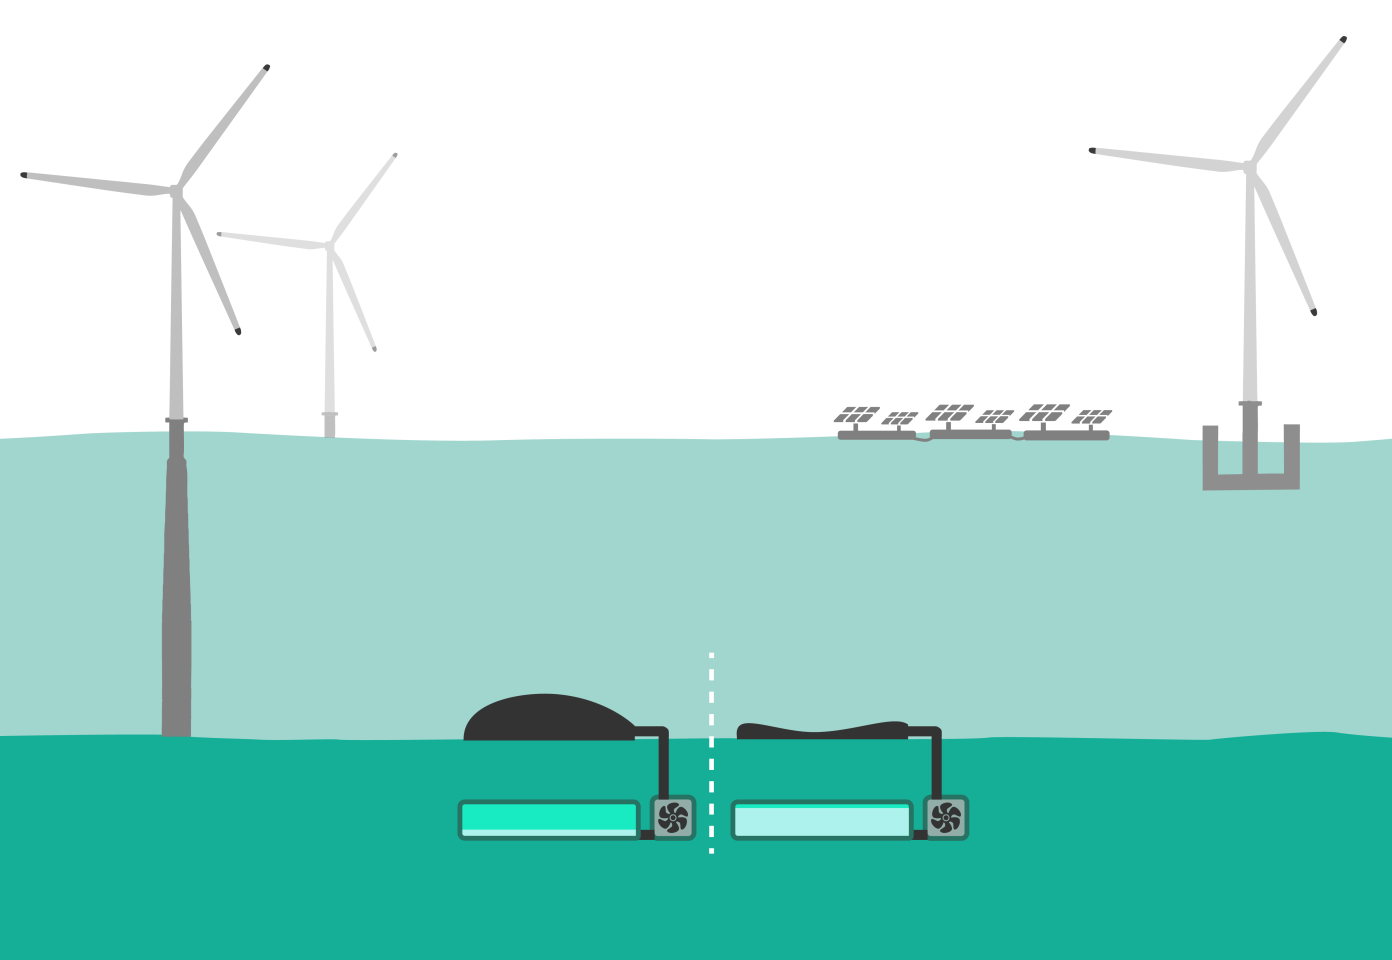 ذخیره انرژی تجدیدپذیر در کف دریا با 